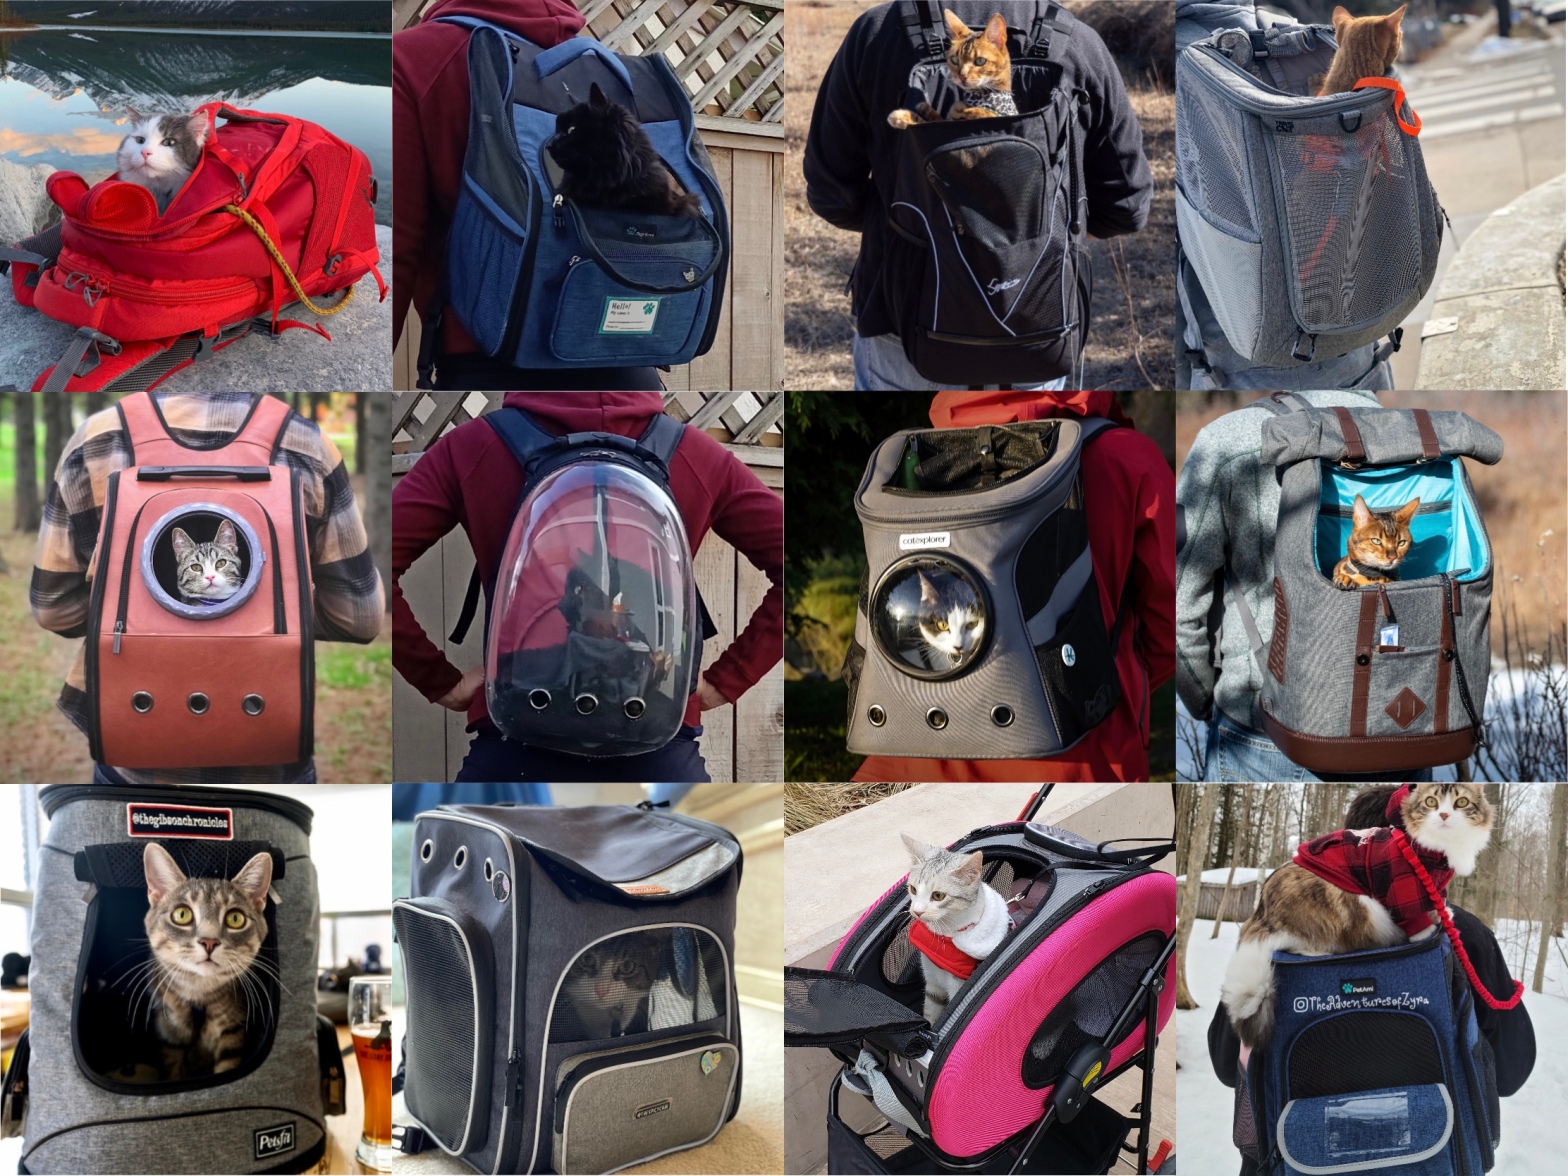 8 Best Cat Backpacks